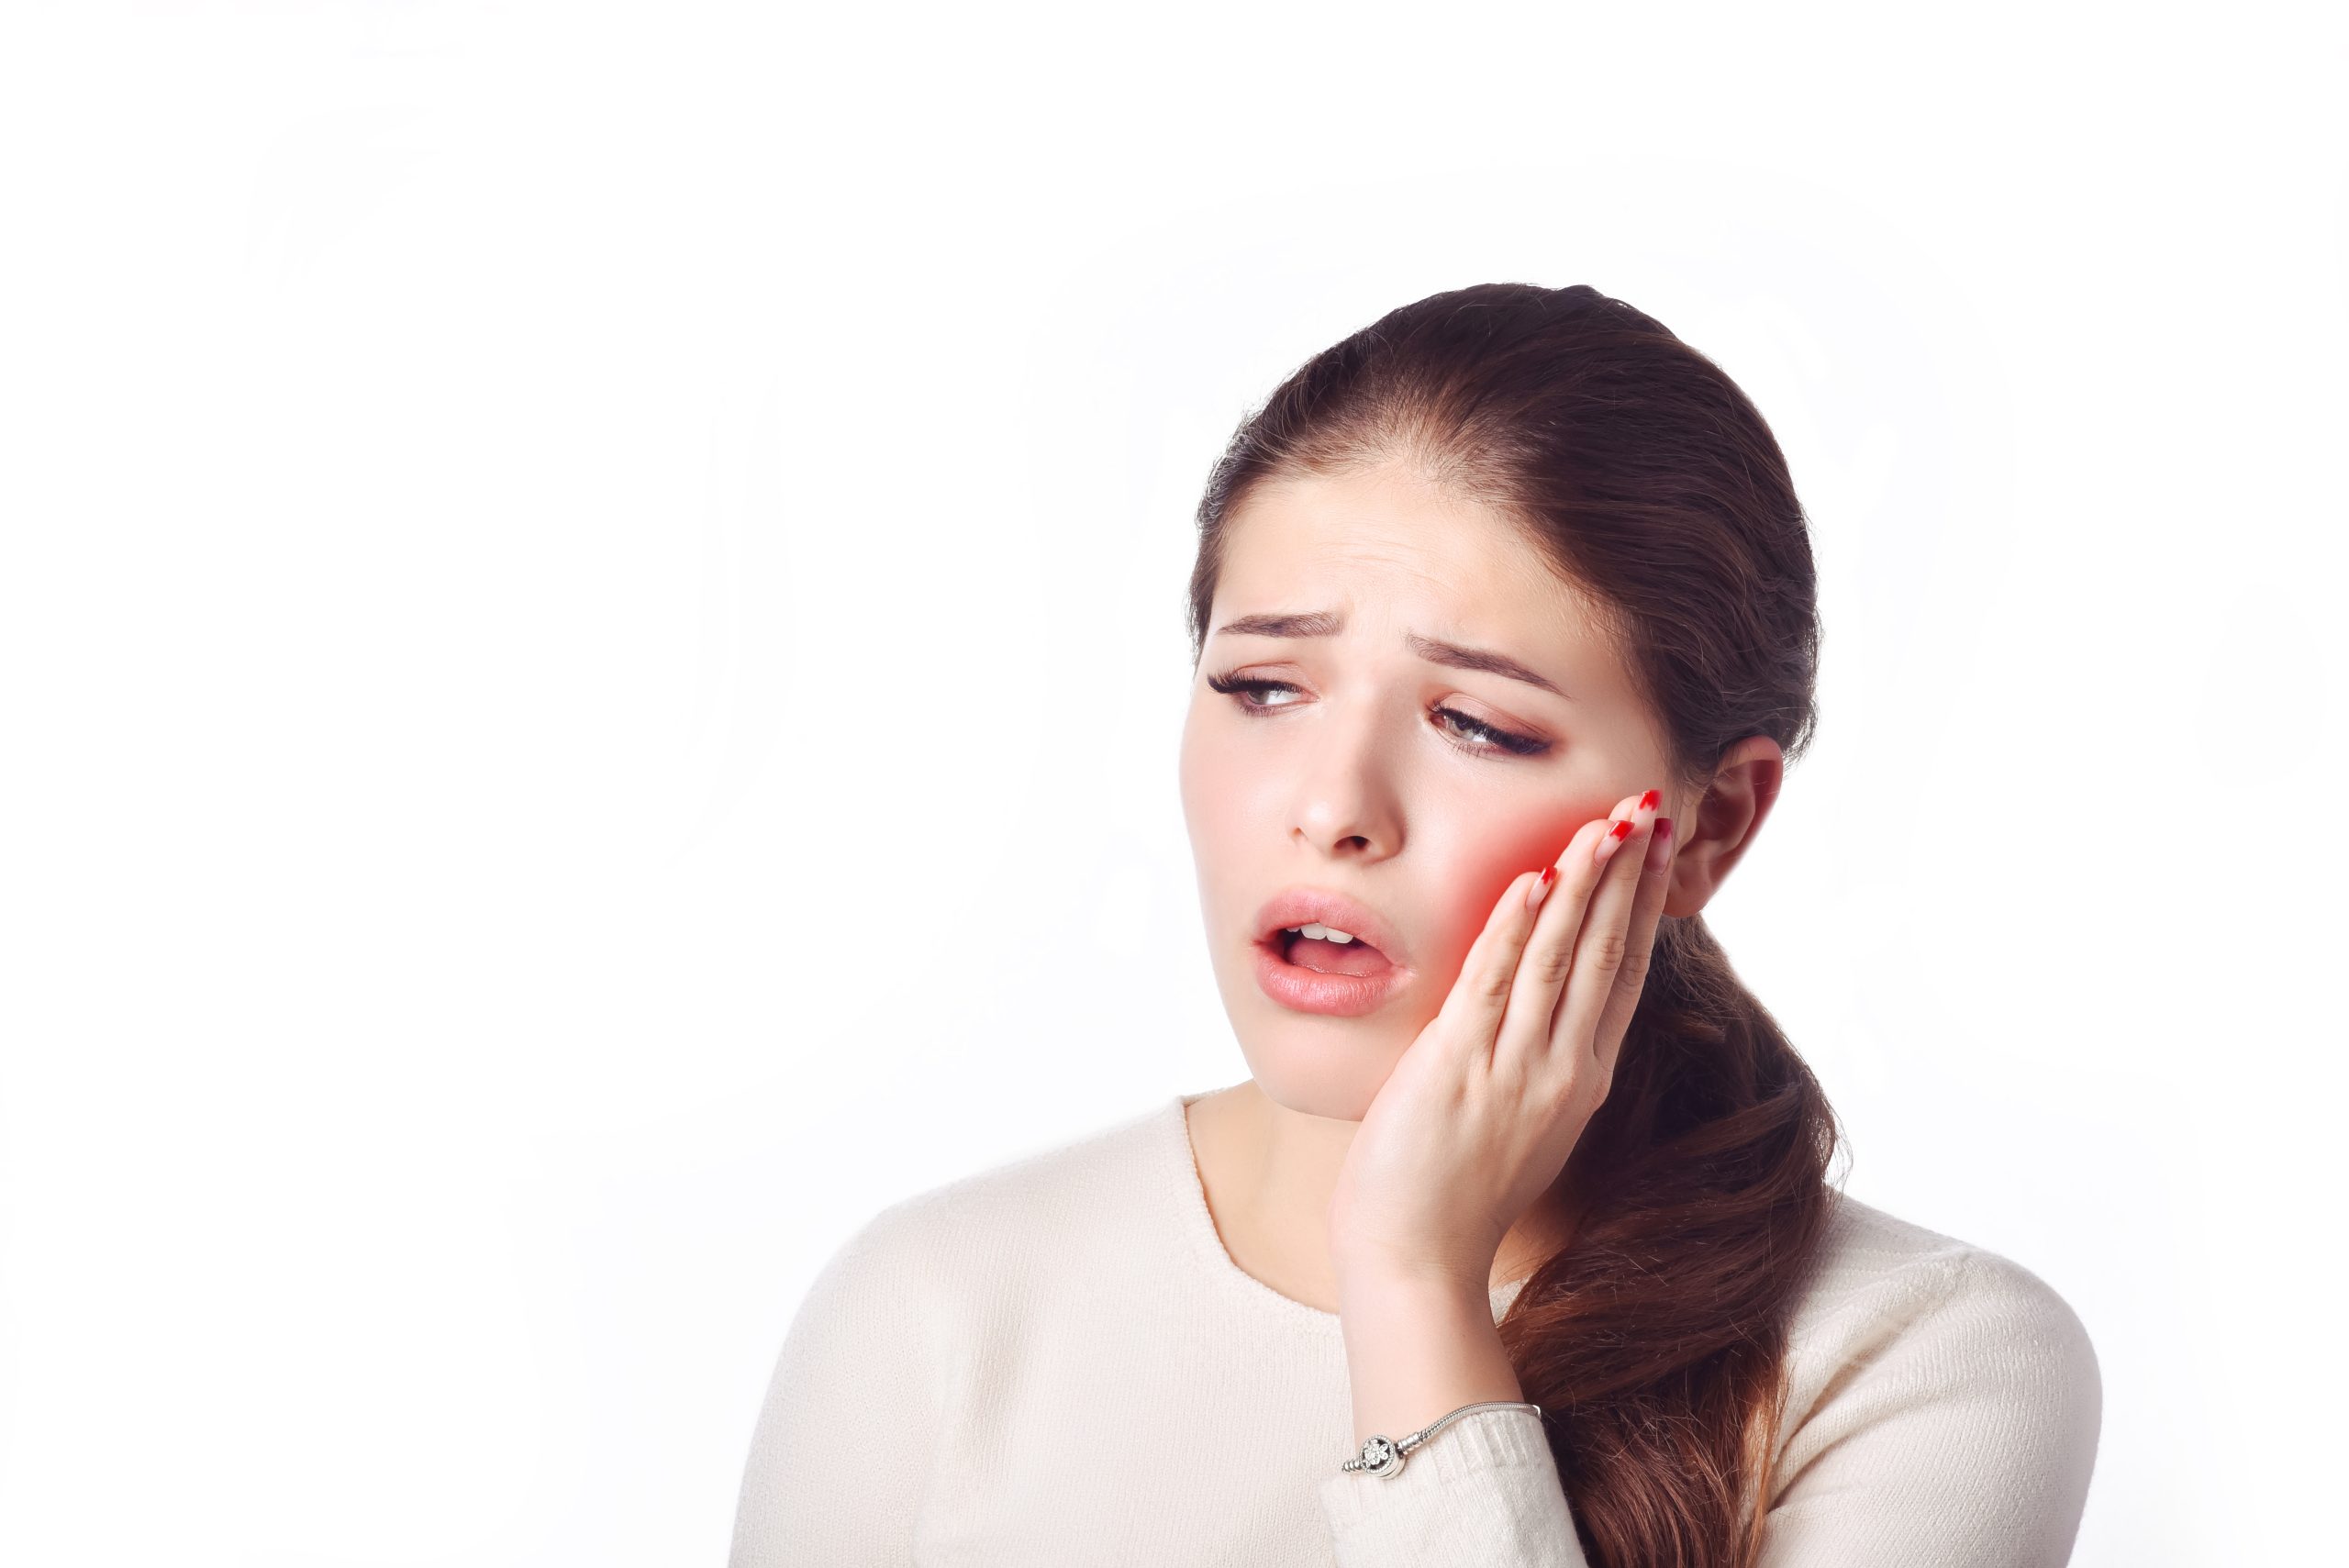 دندان درد بعد از عصب کشی دندان تا چه حد نرمال است